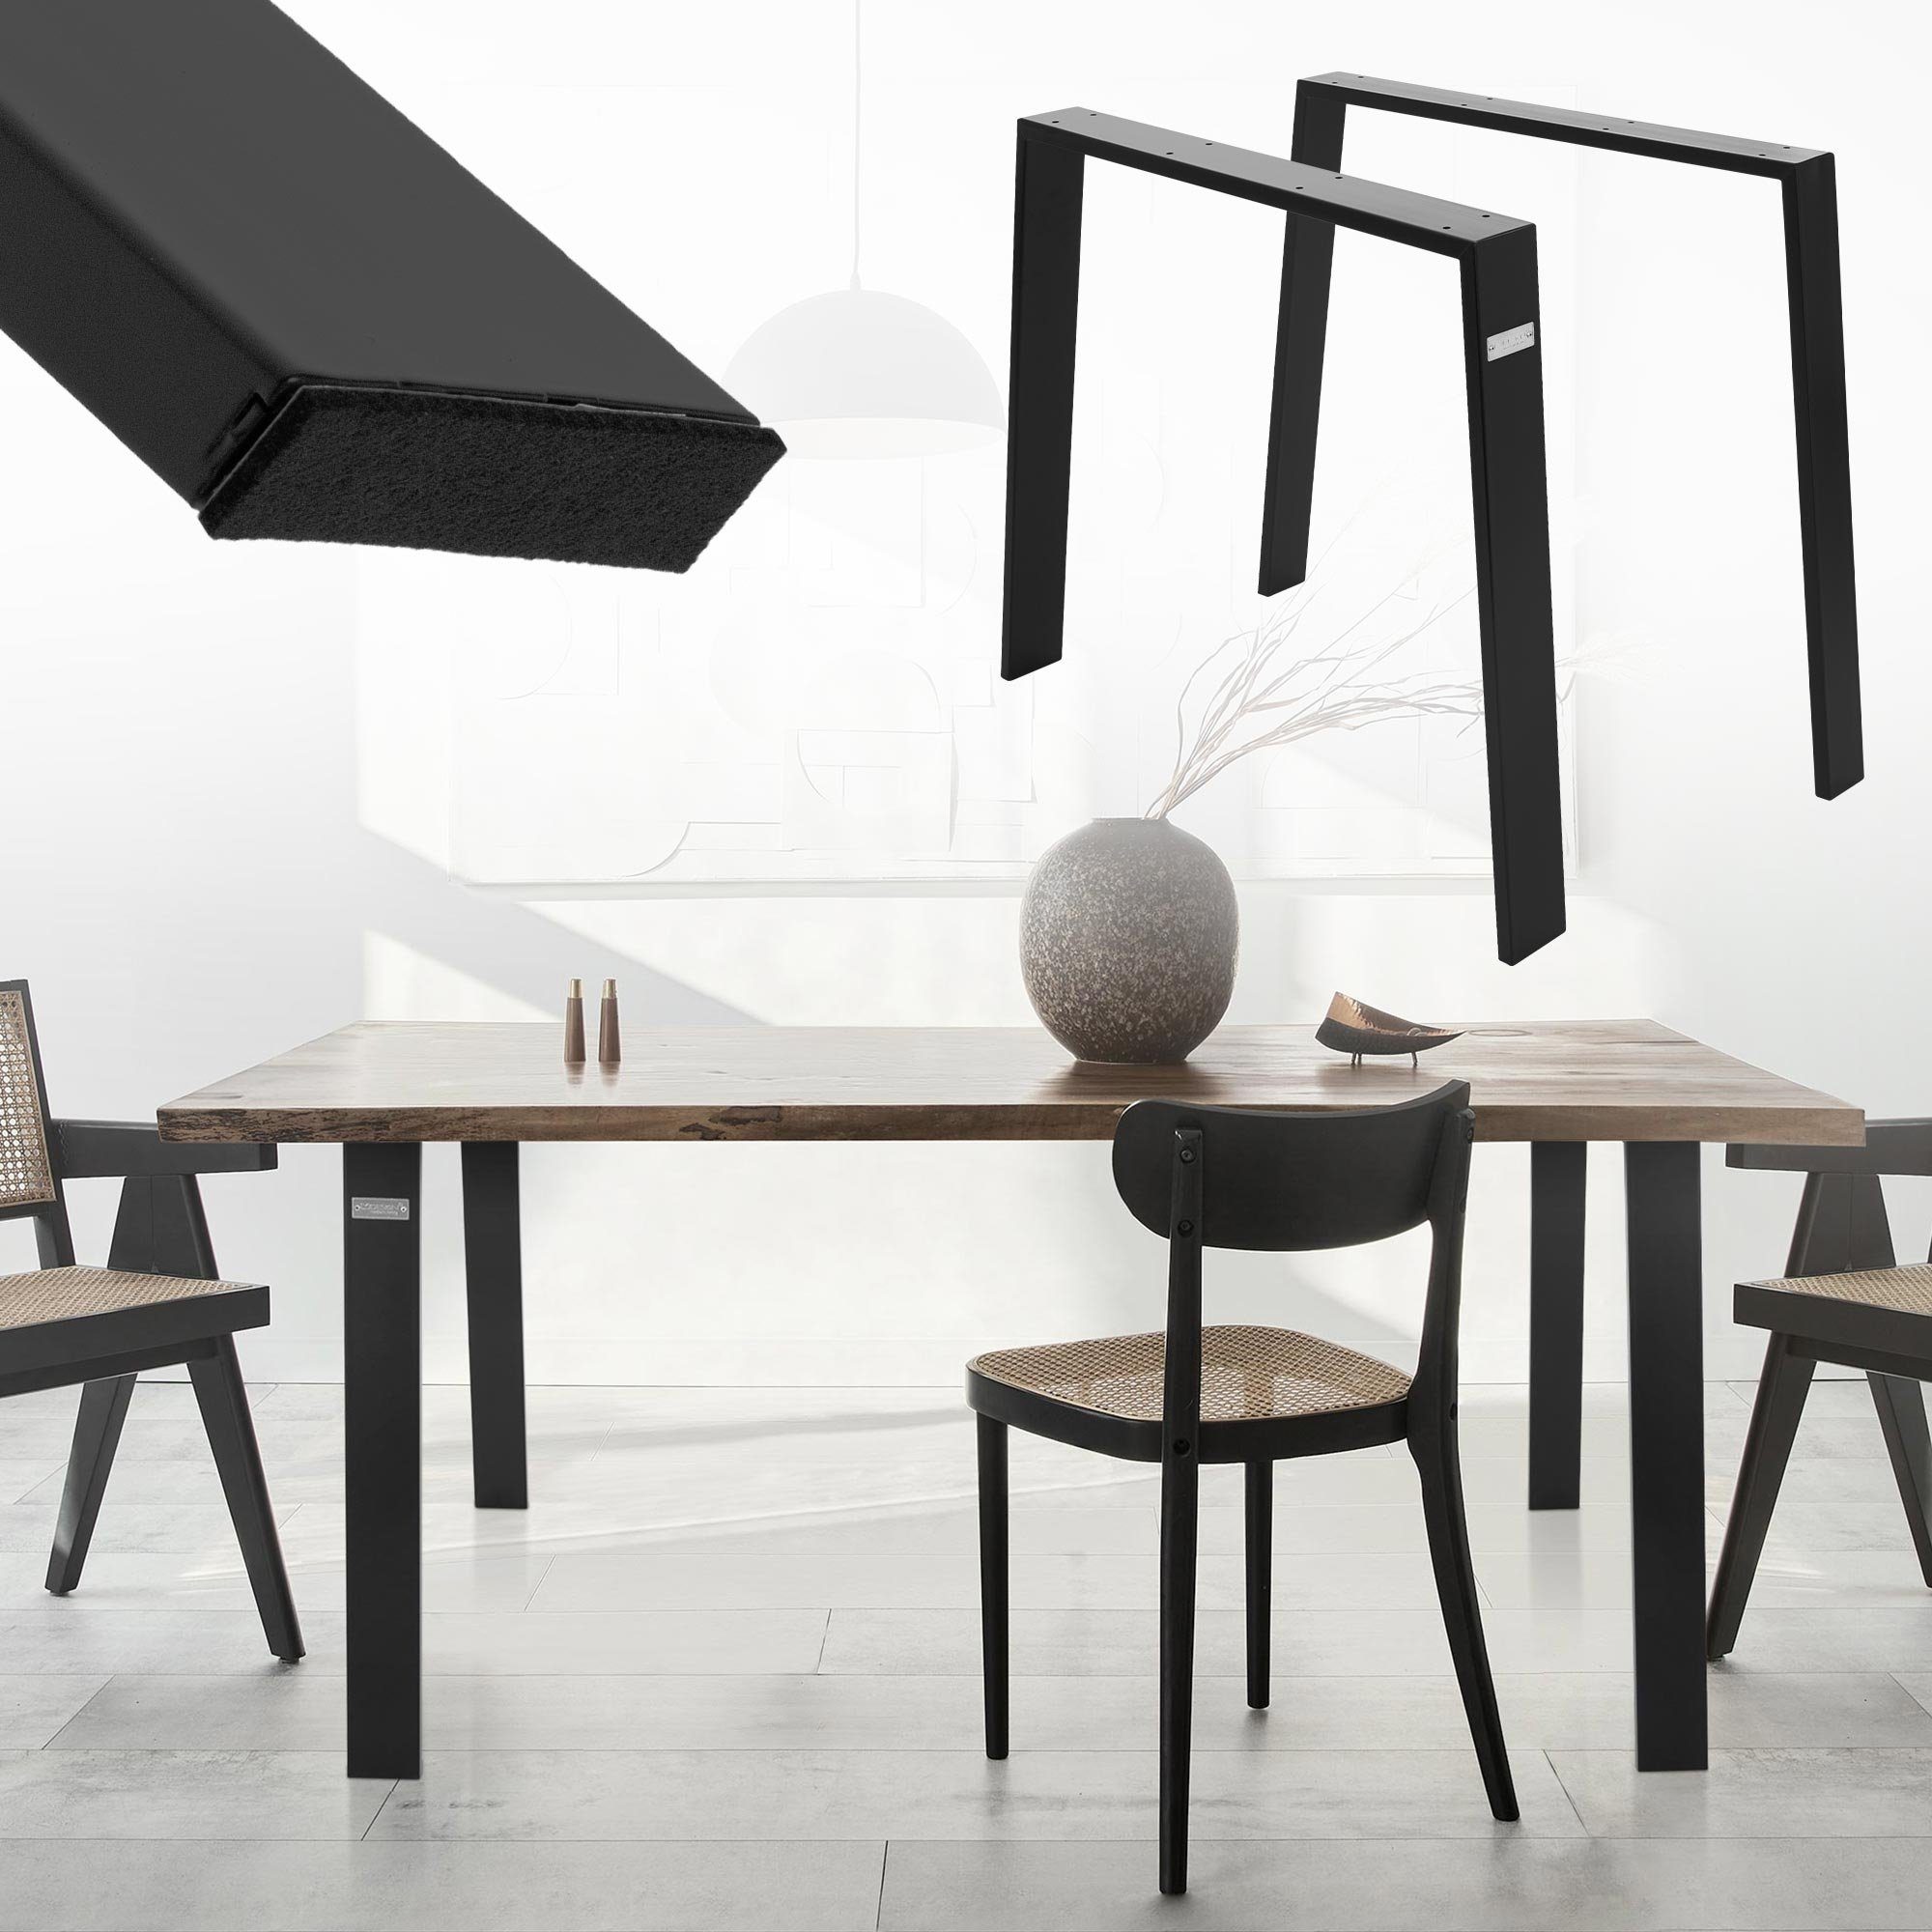 ML-DESIGN Tischbein Loft Tischgestell Tischkufen Tischuntergestell Möbelfüße, 2er Set 90x72cm Schwarz Stahl Industriedesign U-Form